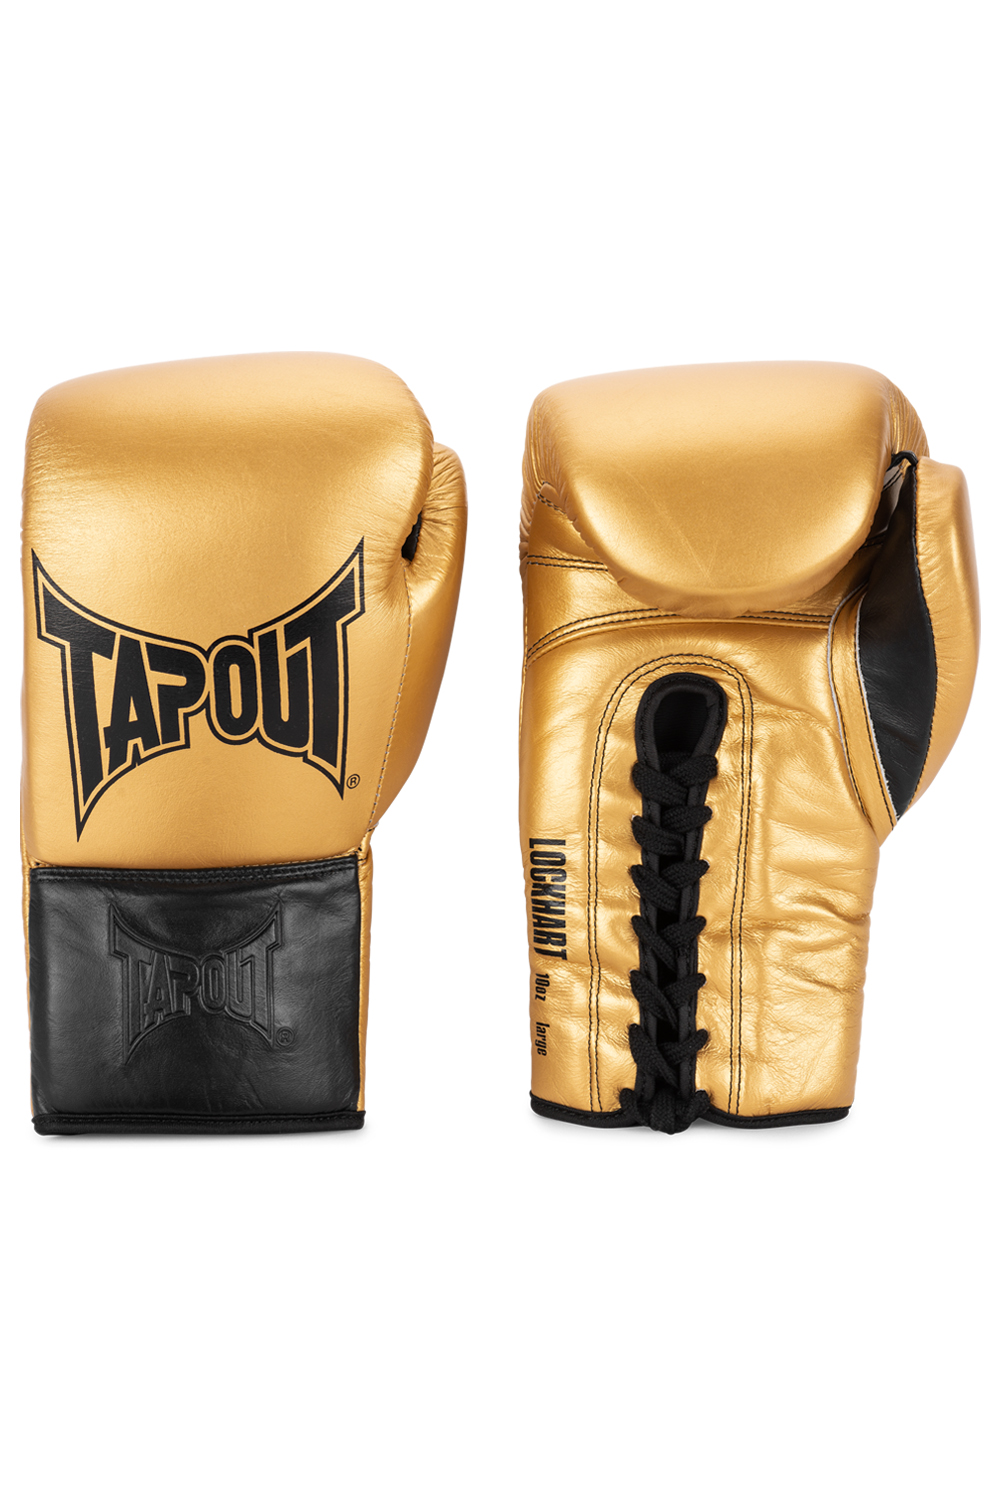 Tapout Boxhandschuhe Aus Leder (1 Paar)